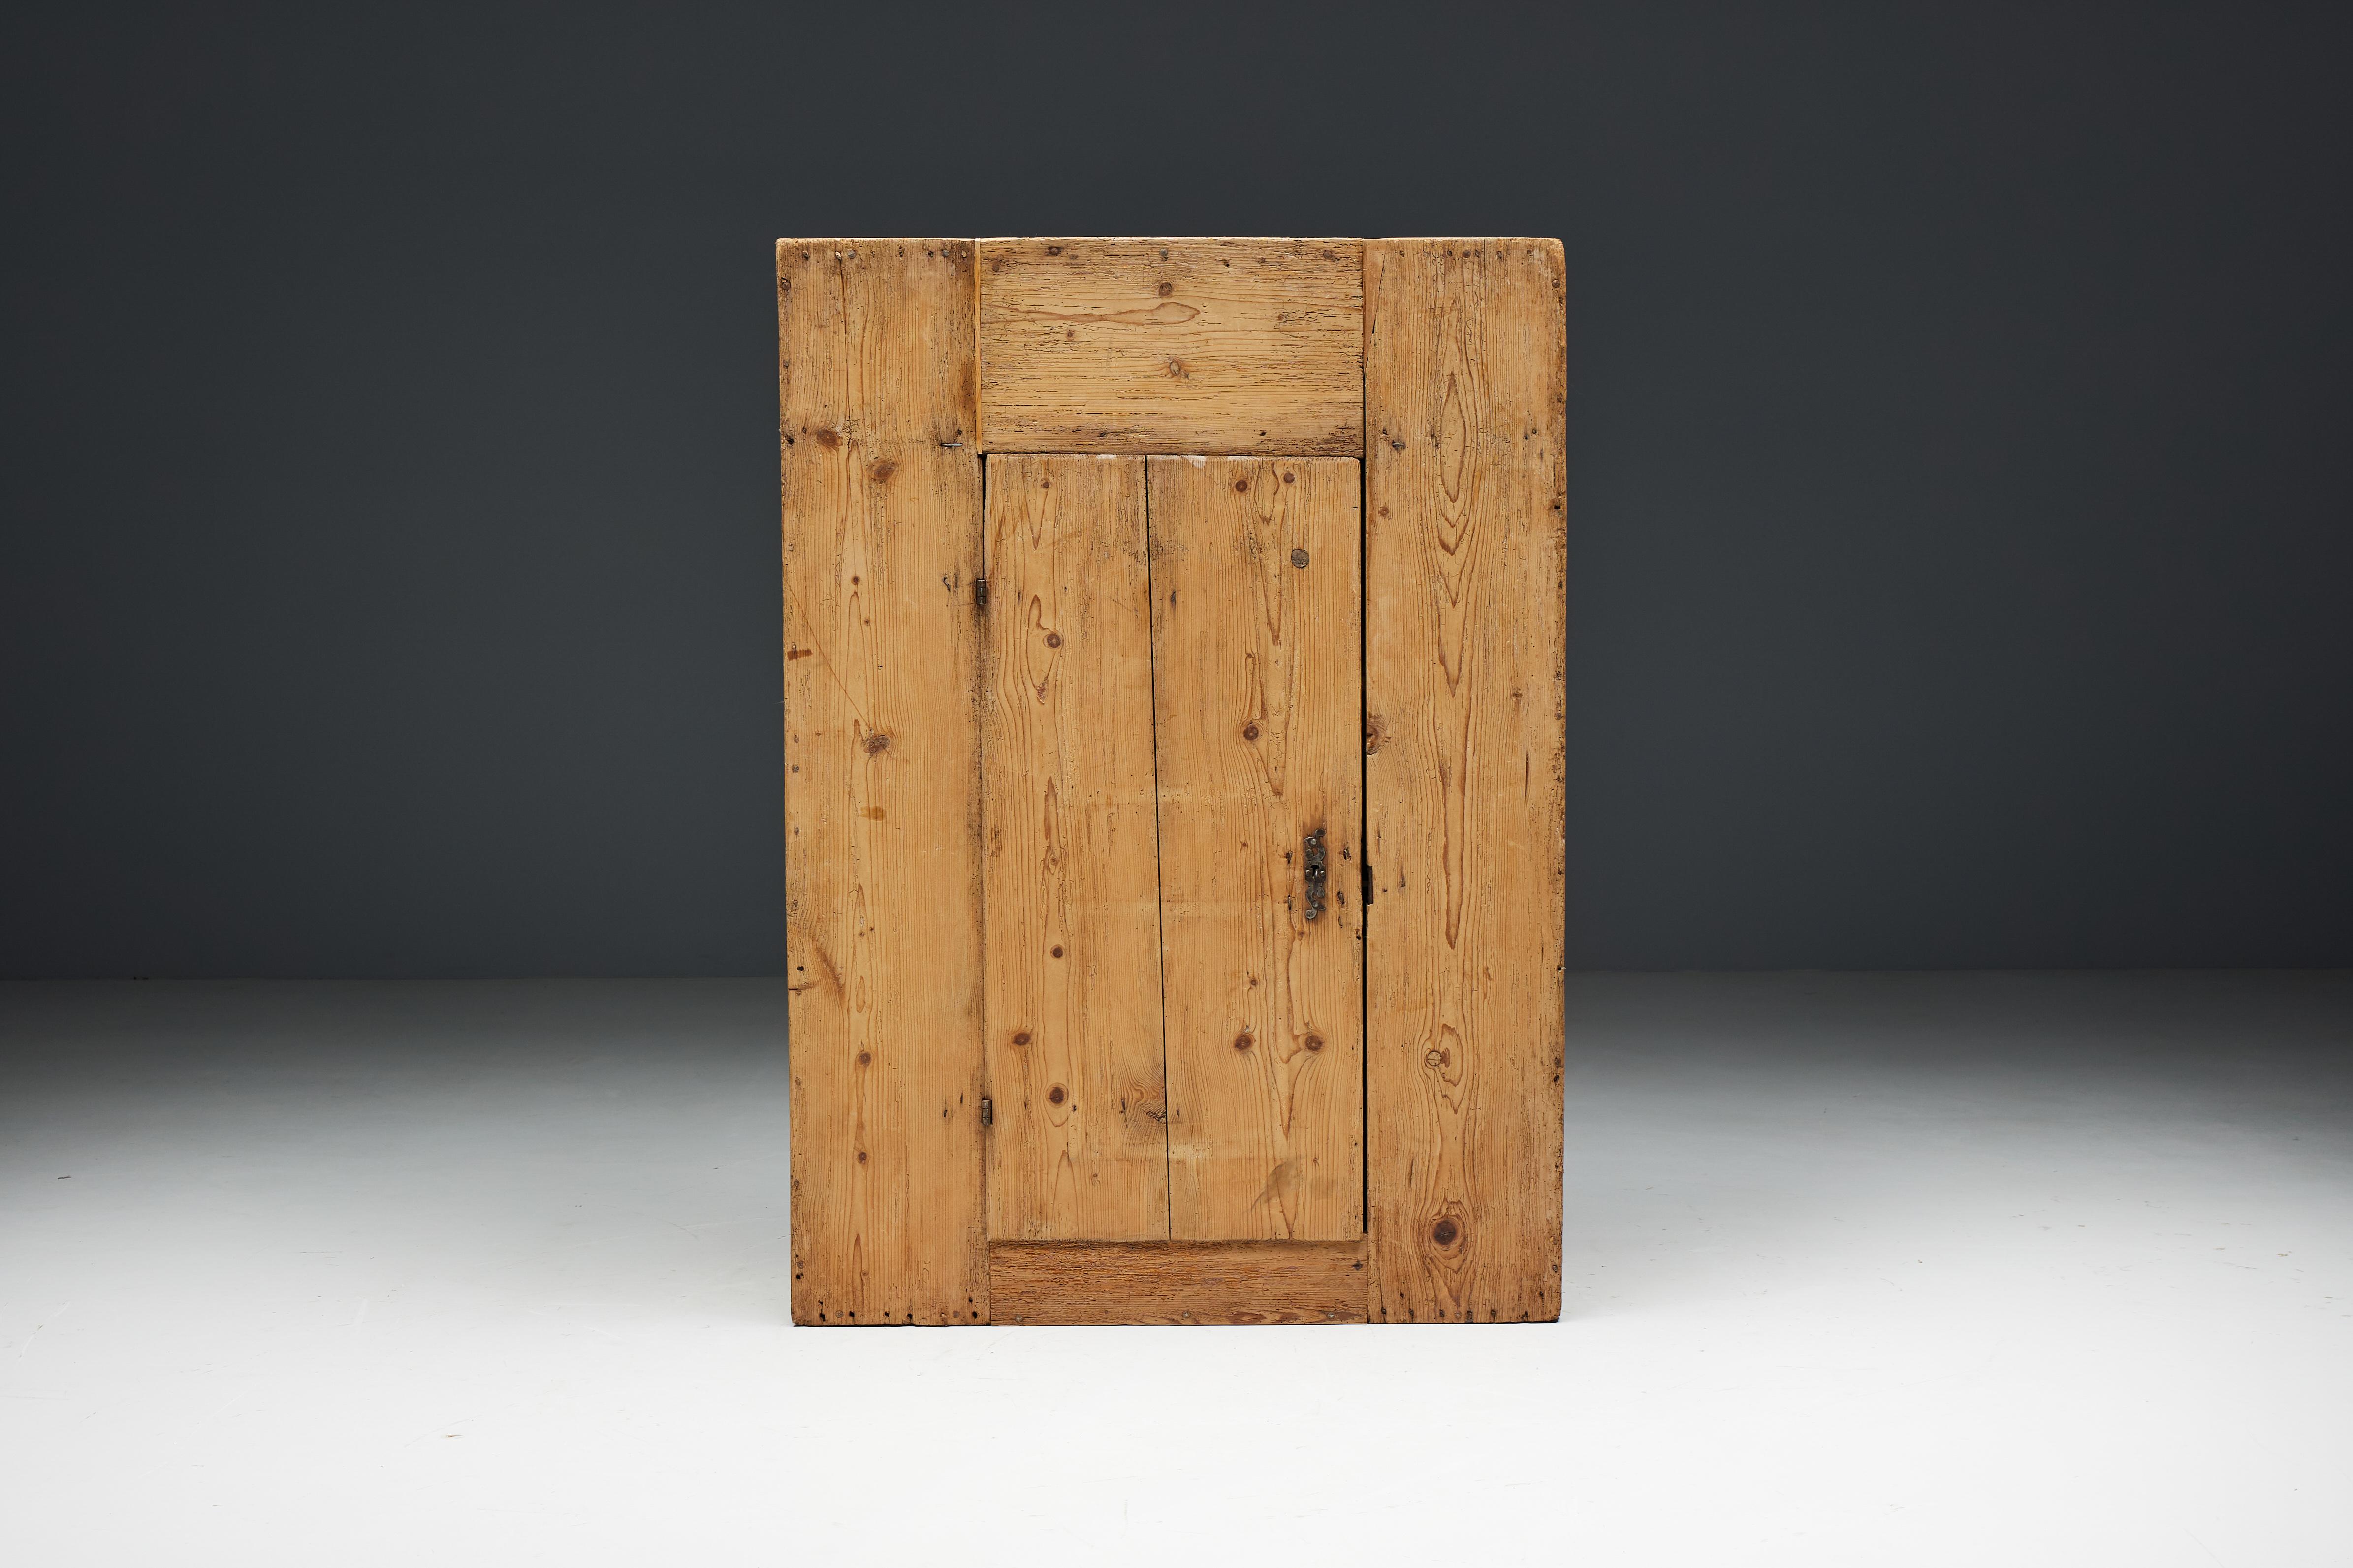 Rustikaler travail populaire Alpenschrank aus Massivholz aus dem frühen 19. Jahrhundert. Dieser organische Travail Populaire-Schrank bietet ausreichend Platz für die Aufbewahrung und Präsentation verschiedener Gegenstände. Ideal als Garderobe in